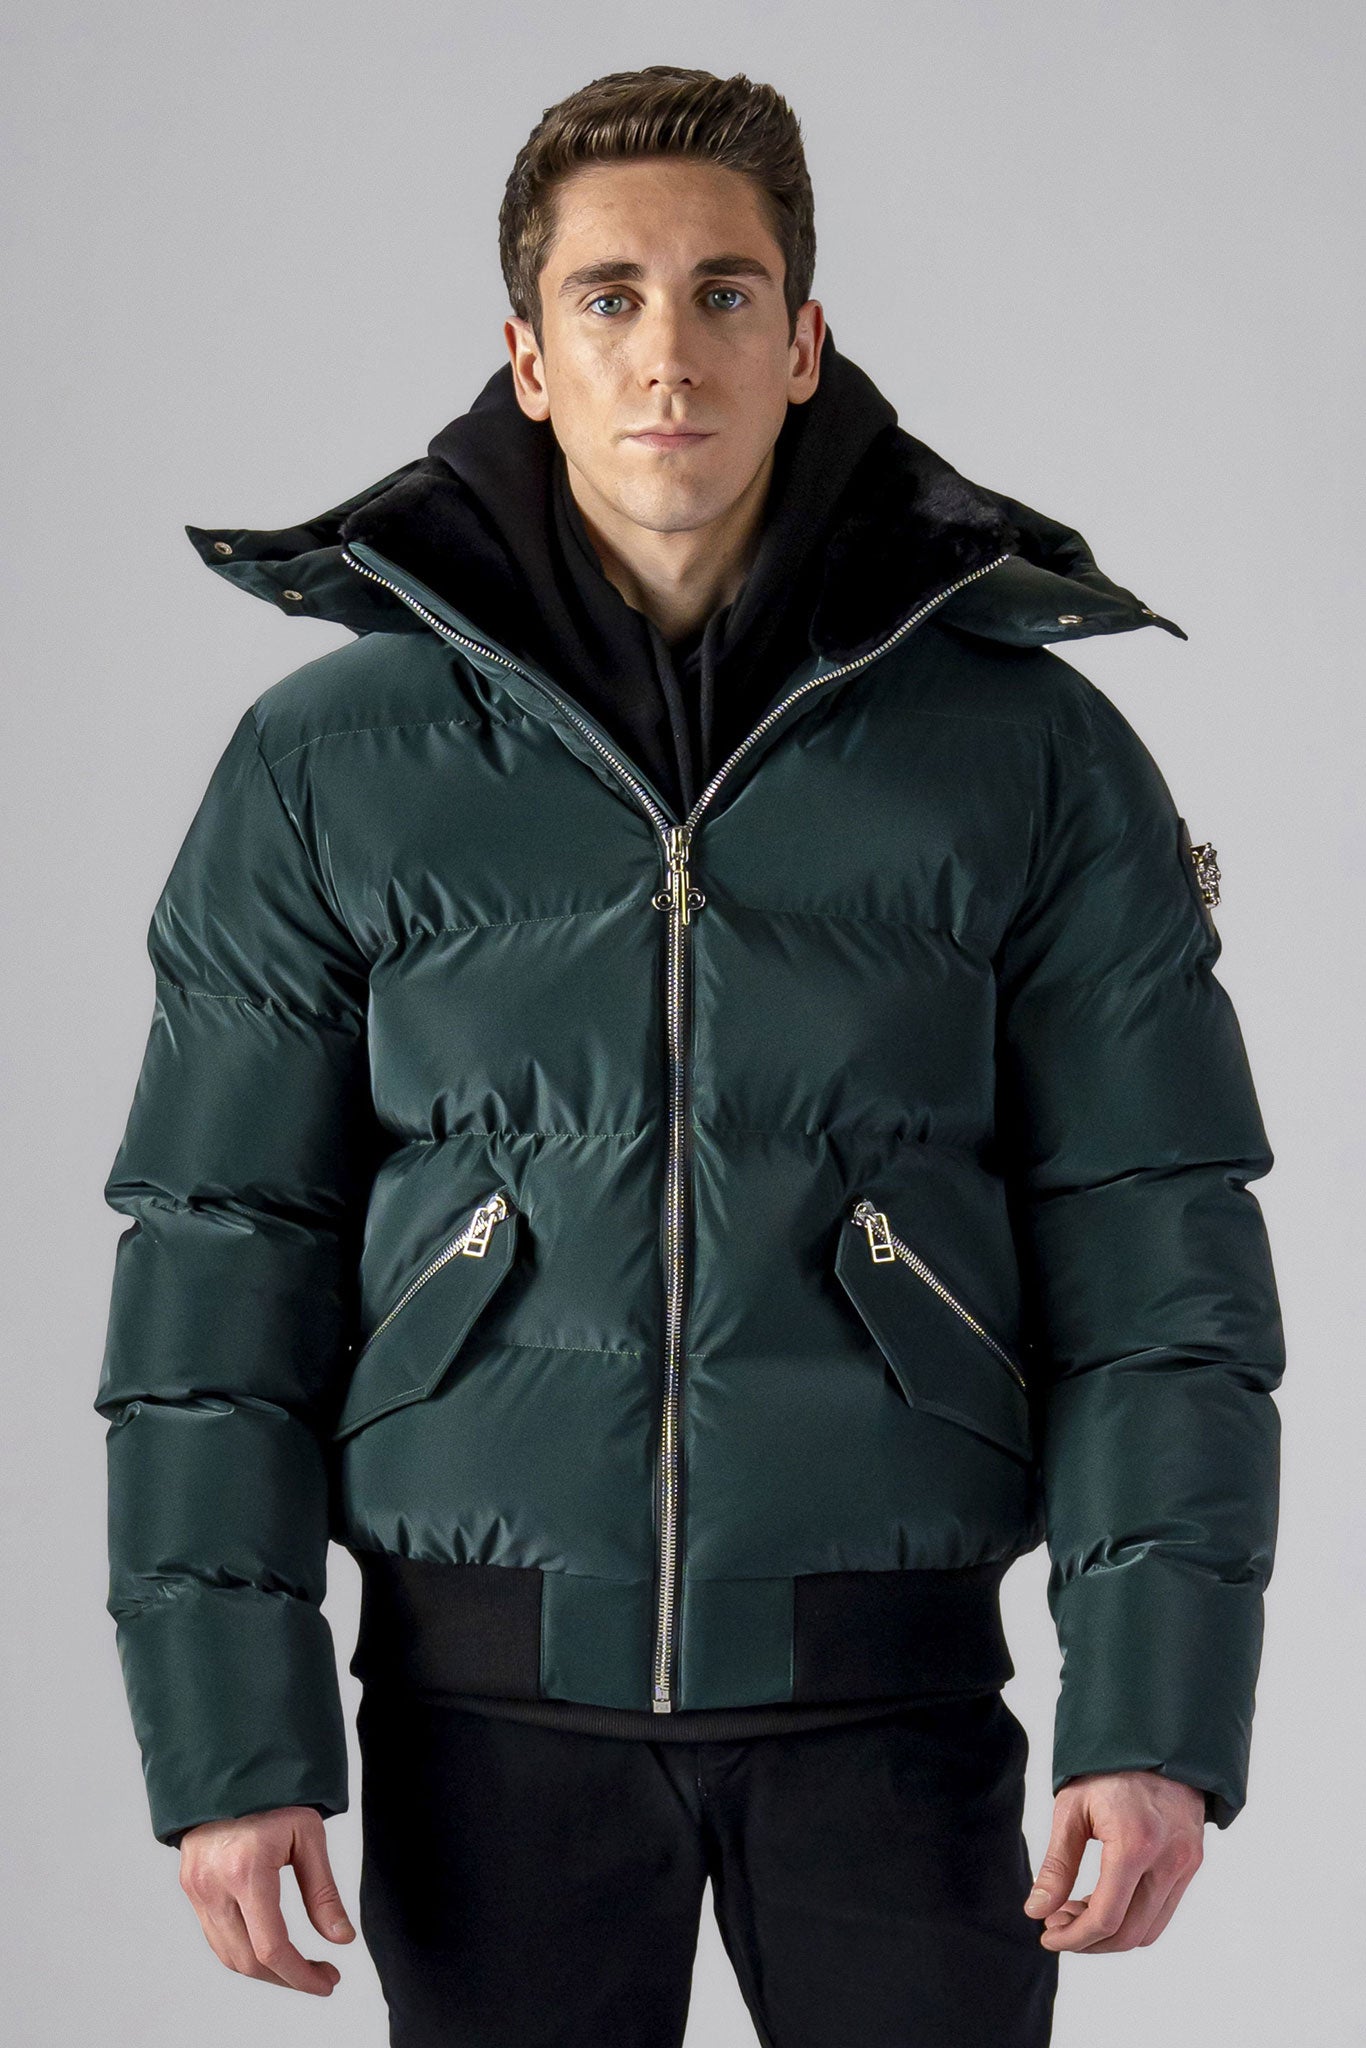 Woodpecker Men's Woody Bomber Winter coat. High-end Canadian designer winter coat for men in 